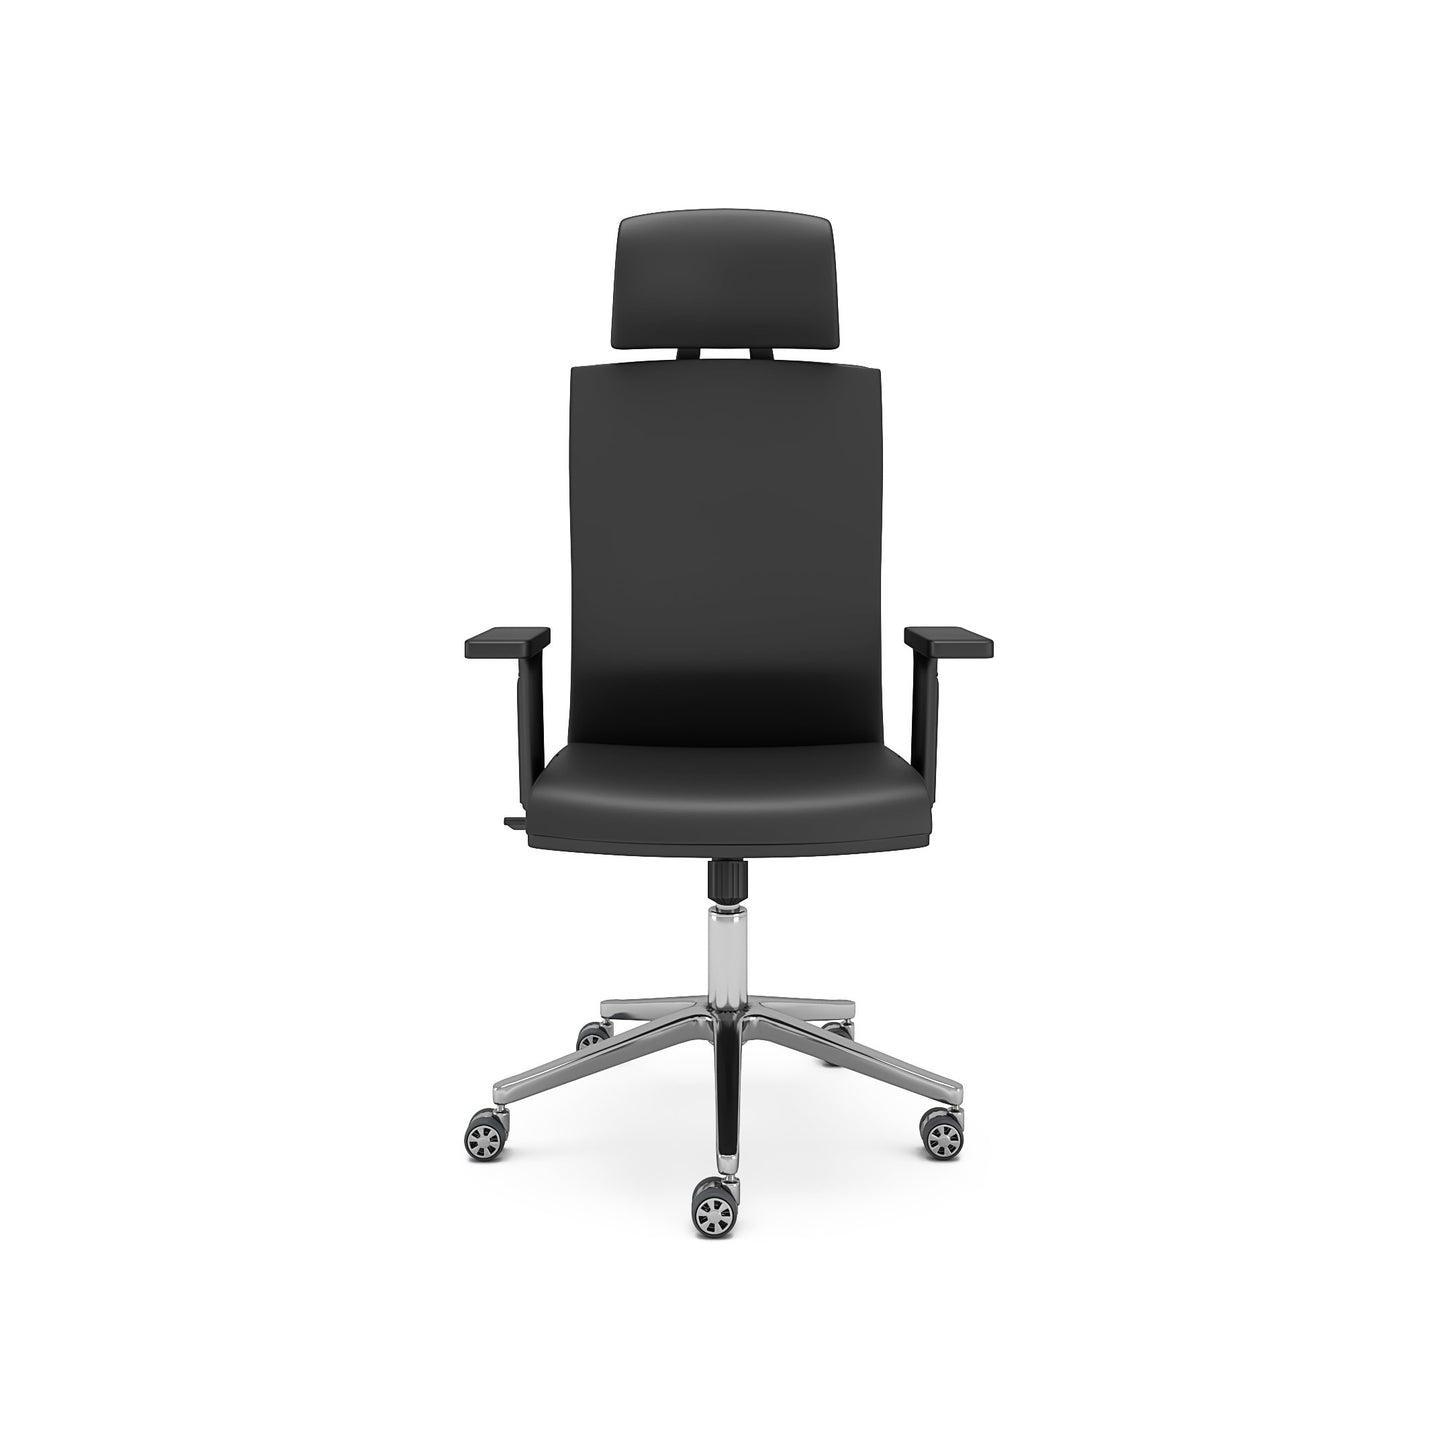 Nancy's Windham Office Chair - Swivel chair - Tiltable backrest - Ergonomic - Headrest - Brown - Faux leather - Plastic - 65 x 63 x 120-130 cm